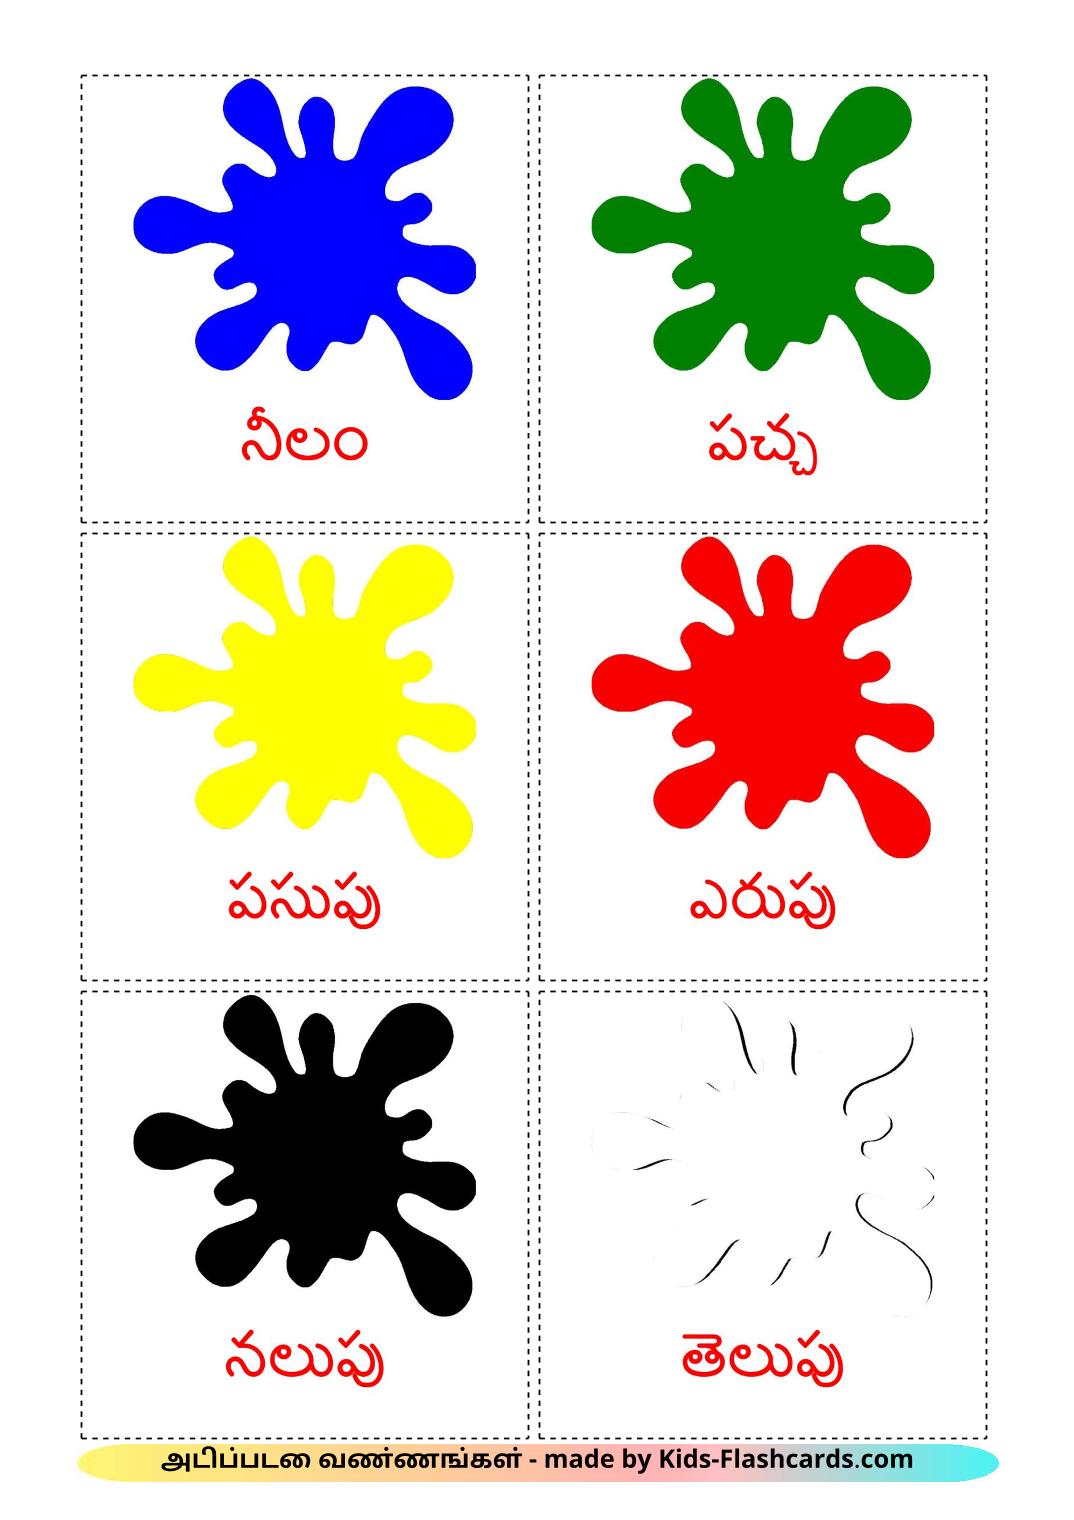 Couleurs de Base - 12 Flashcards tamil imprimables gratuitement